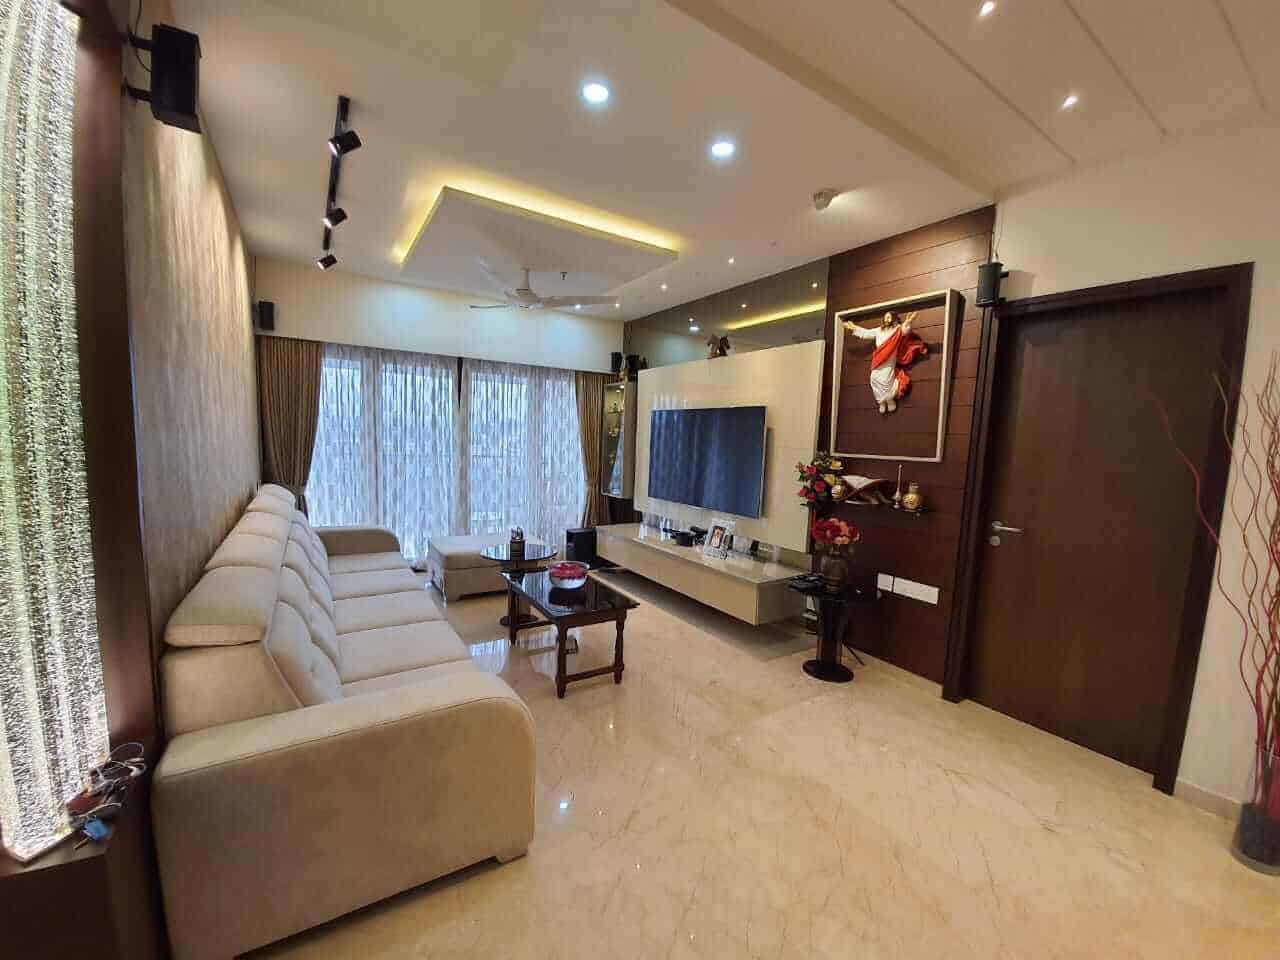 Home interior designers in Bangalore